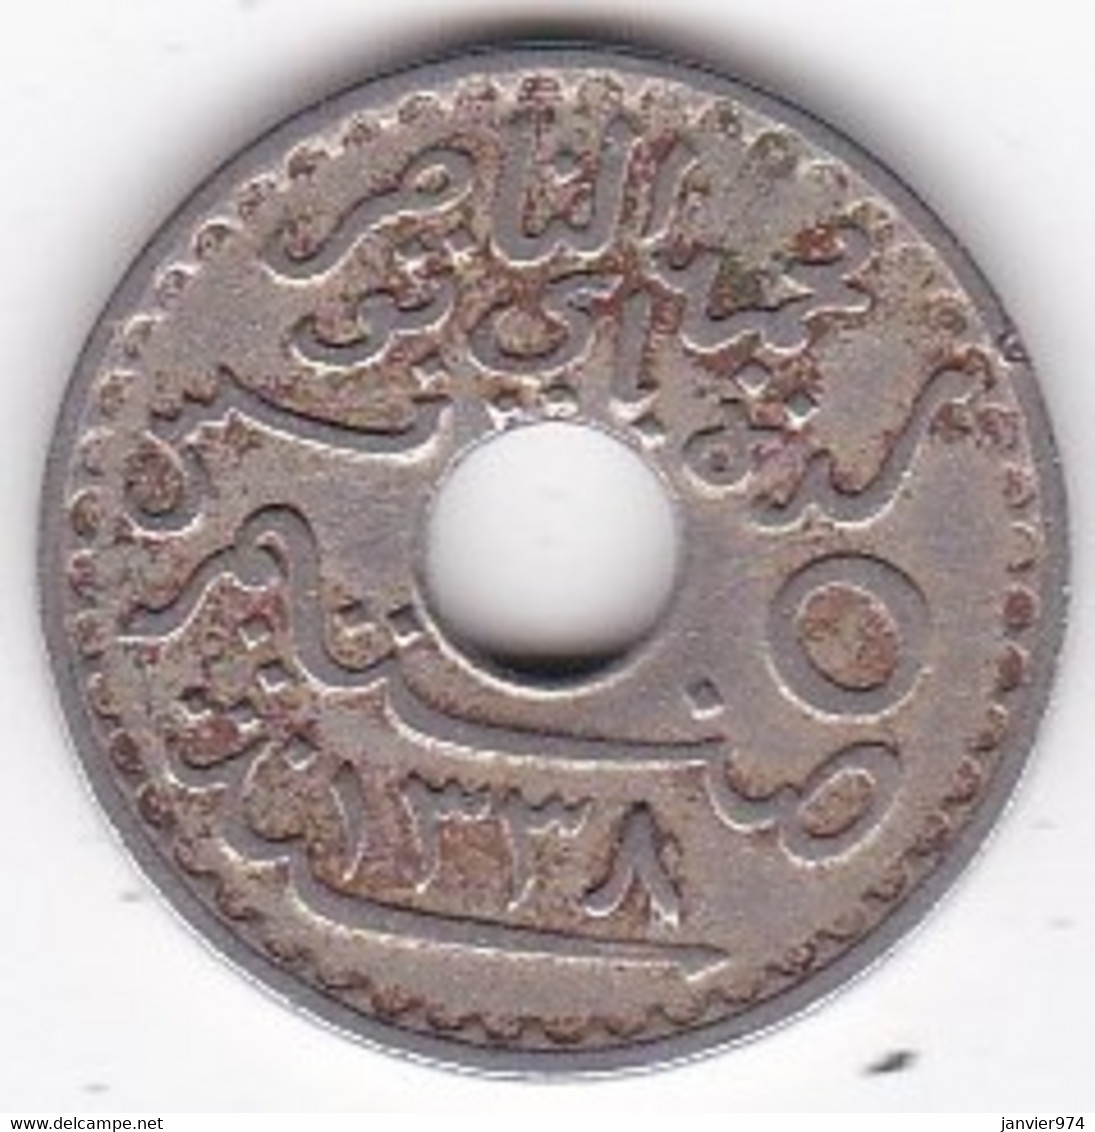 Protectorat Français . 5 Centimes 1920 HA 1338, Grand Module, En Frappe Monnaie En Cupro Nickel, Lec# 85 - Tunisie